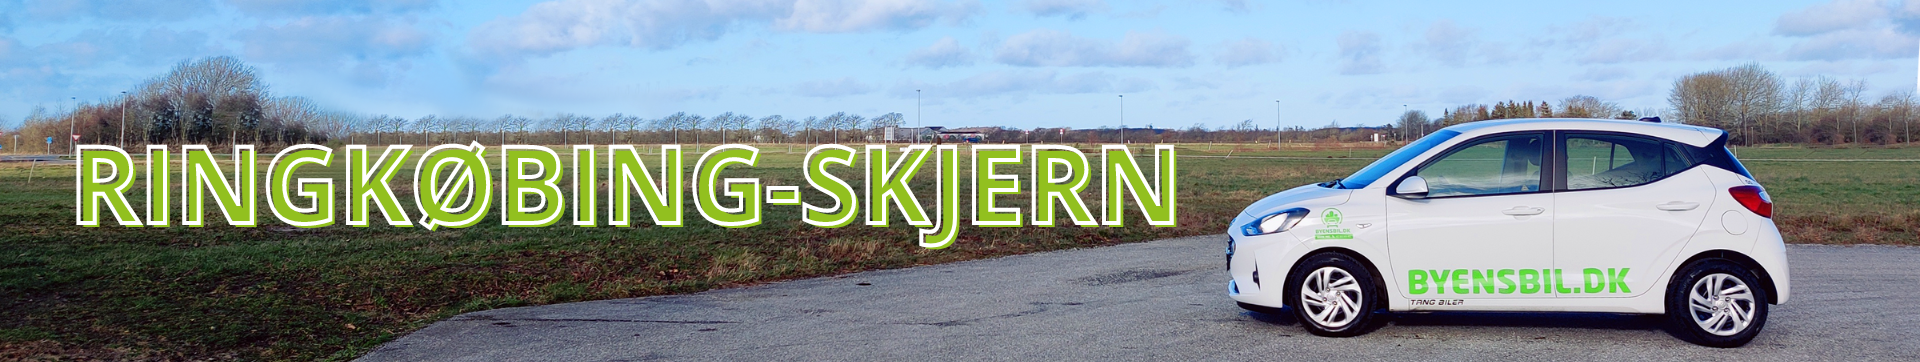 Coverbillede for Ringkøbing-Skjern kommune